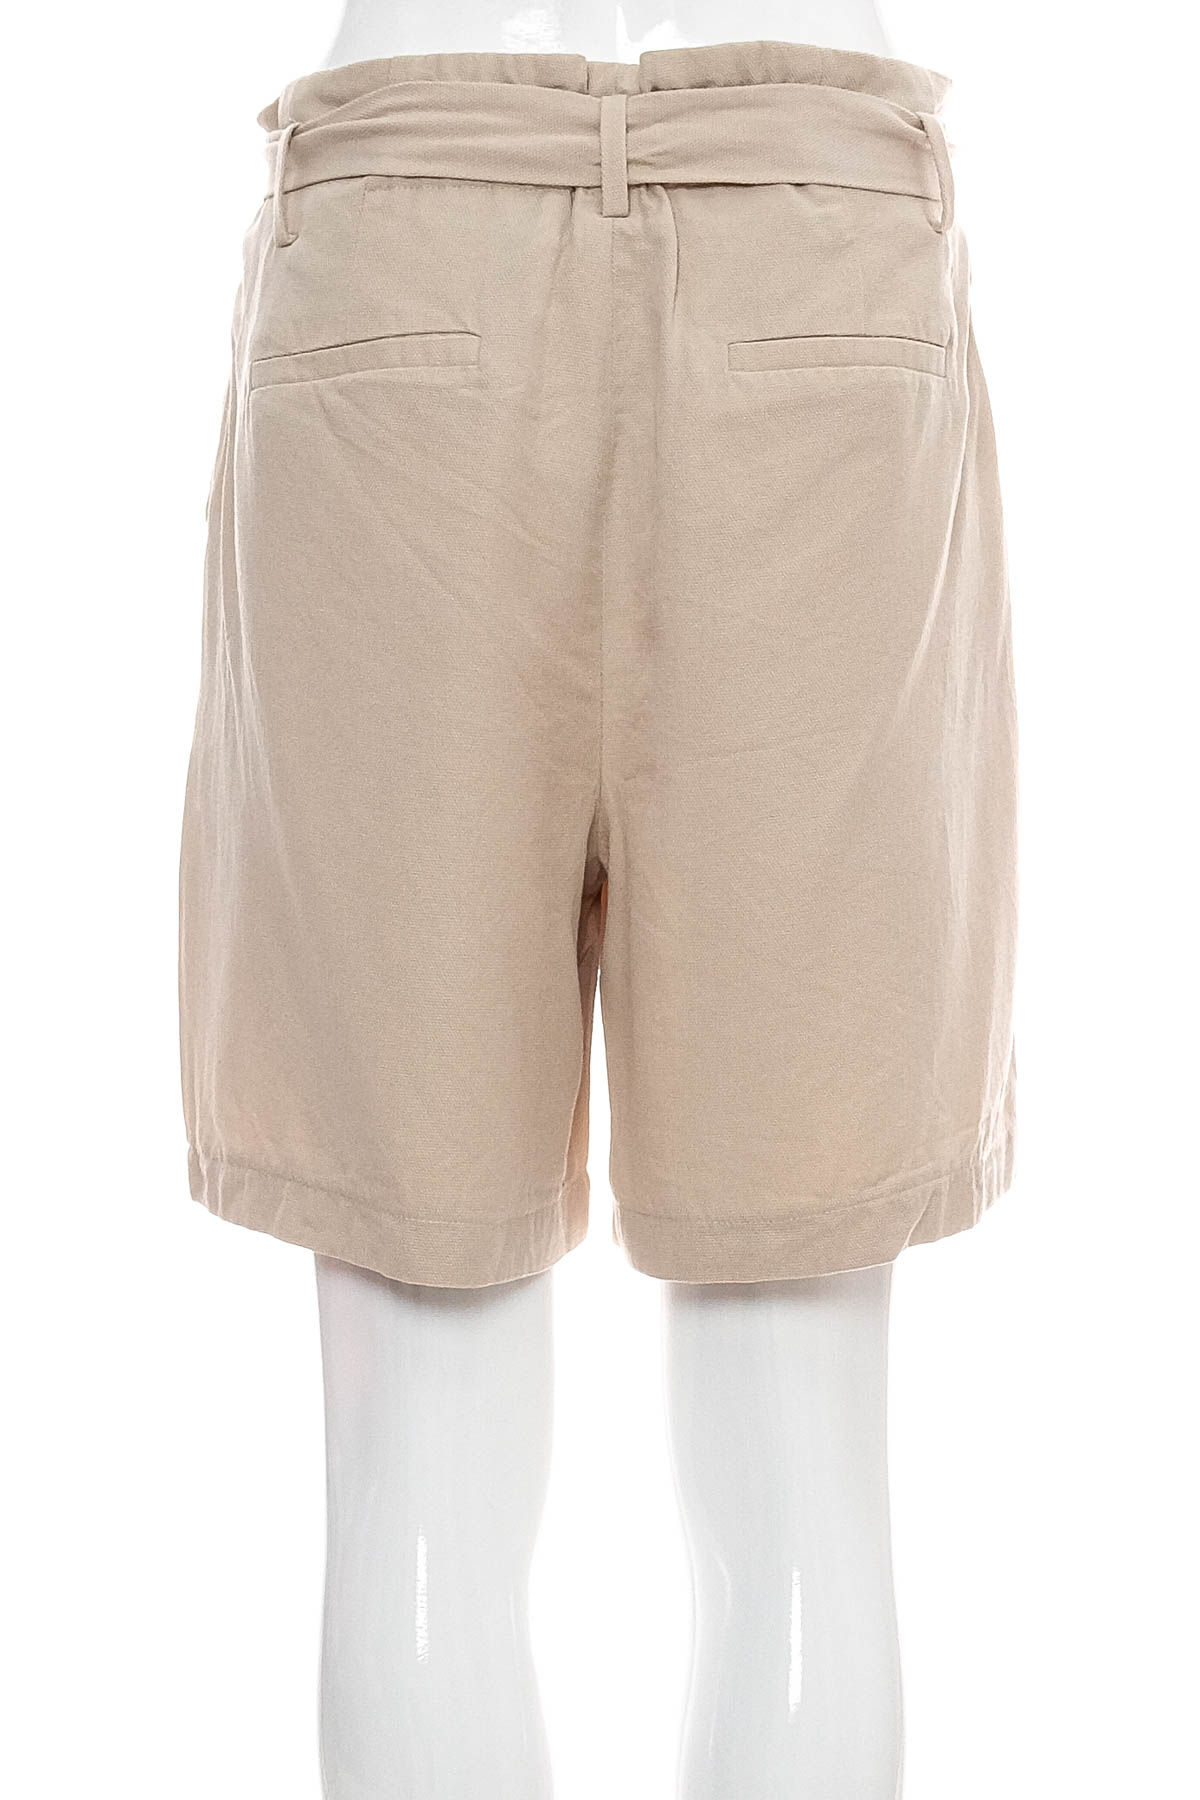 Krótkie spodnie damskie - More & More - 1